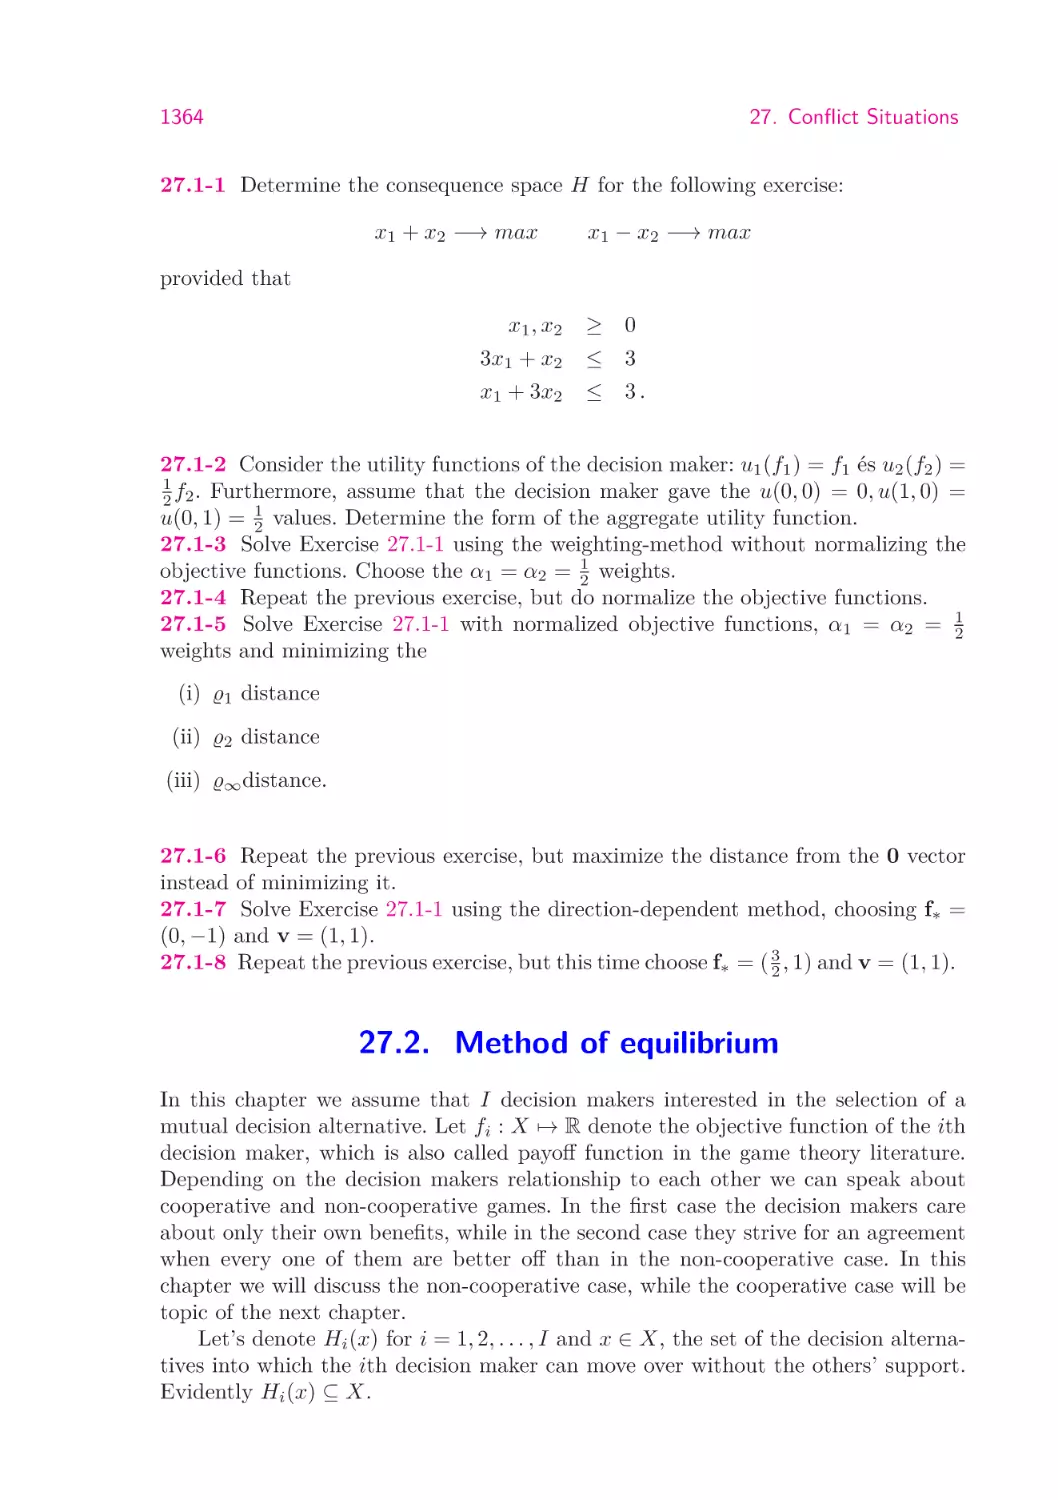 27.2.  Method of equilibrium